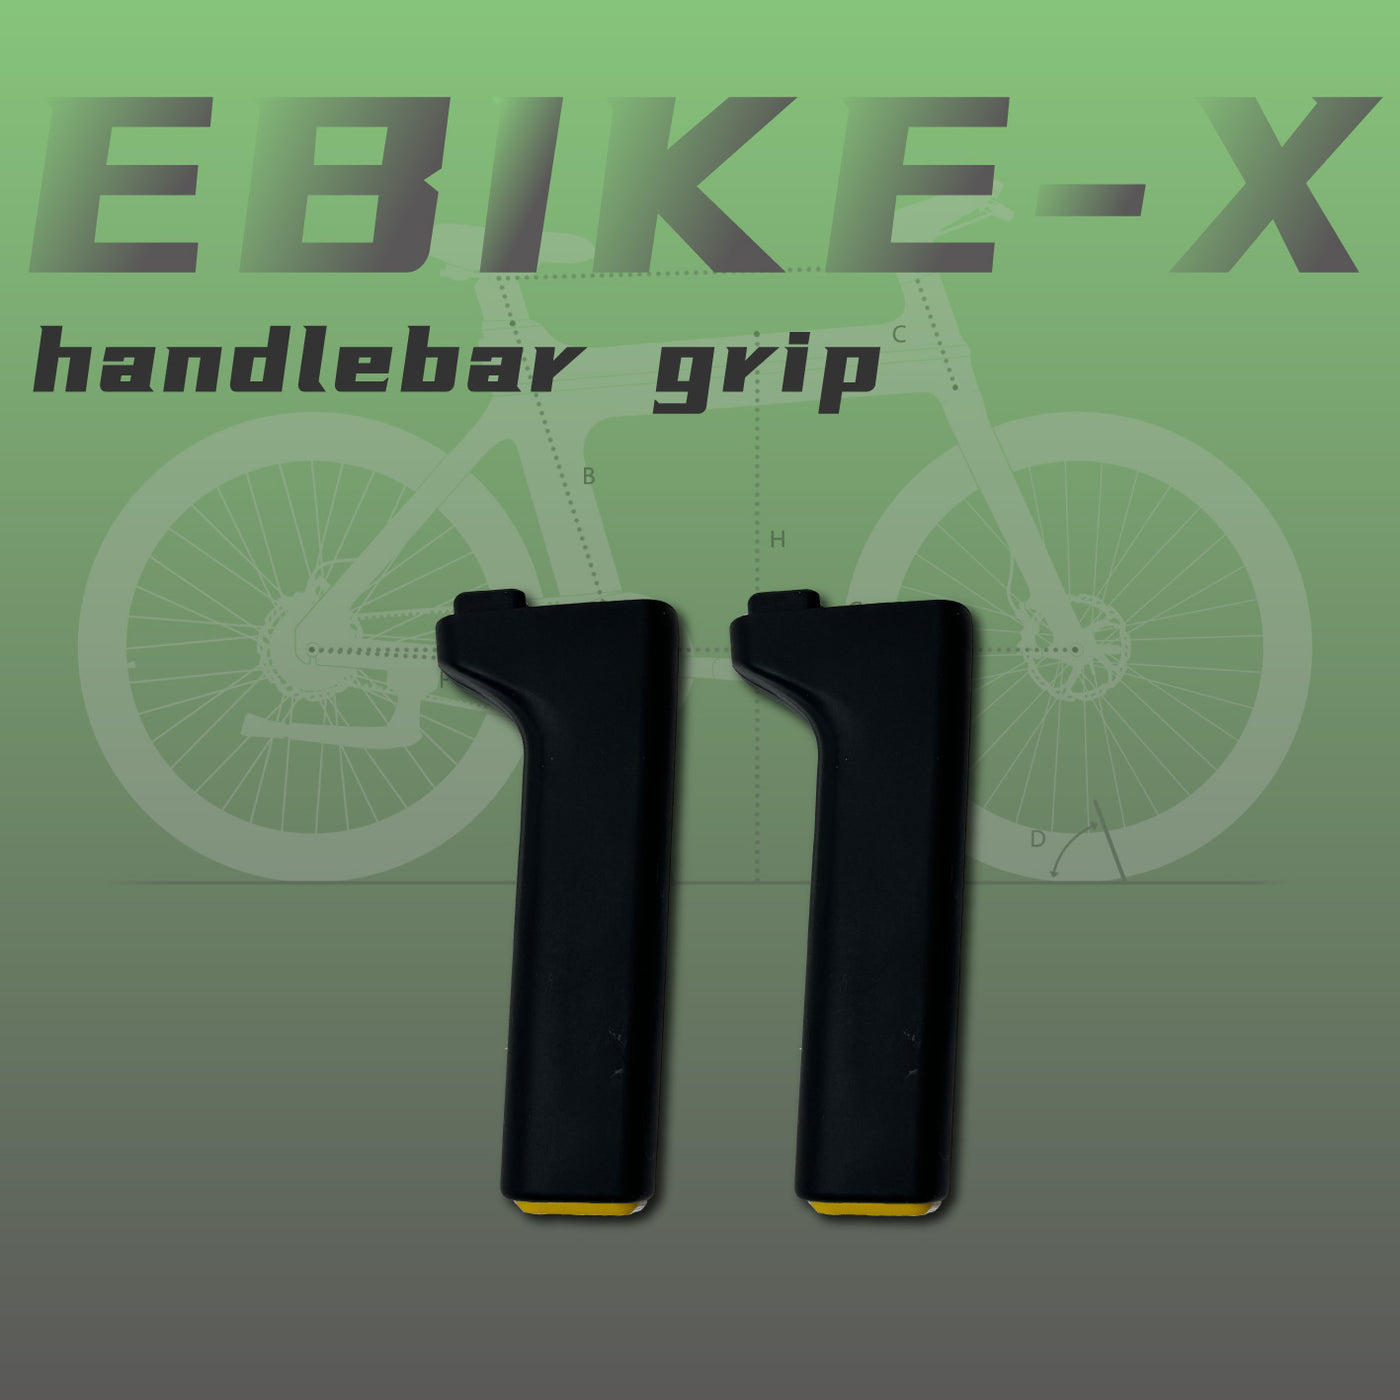 Ebike-X Handlebar Grip